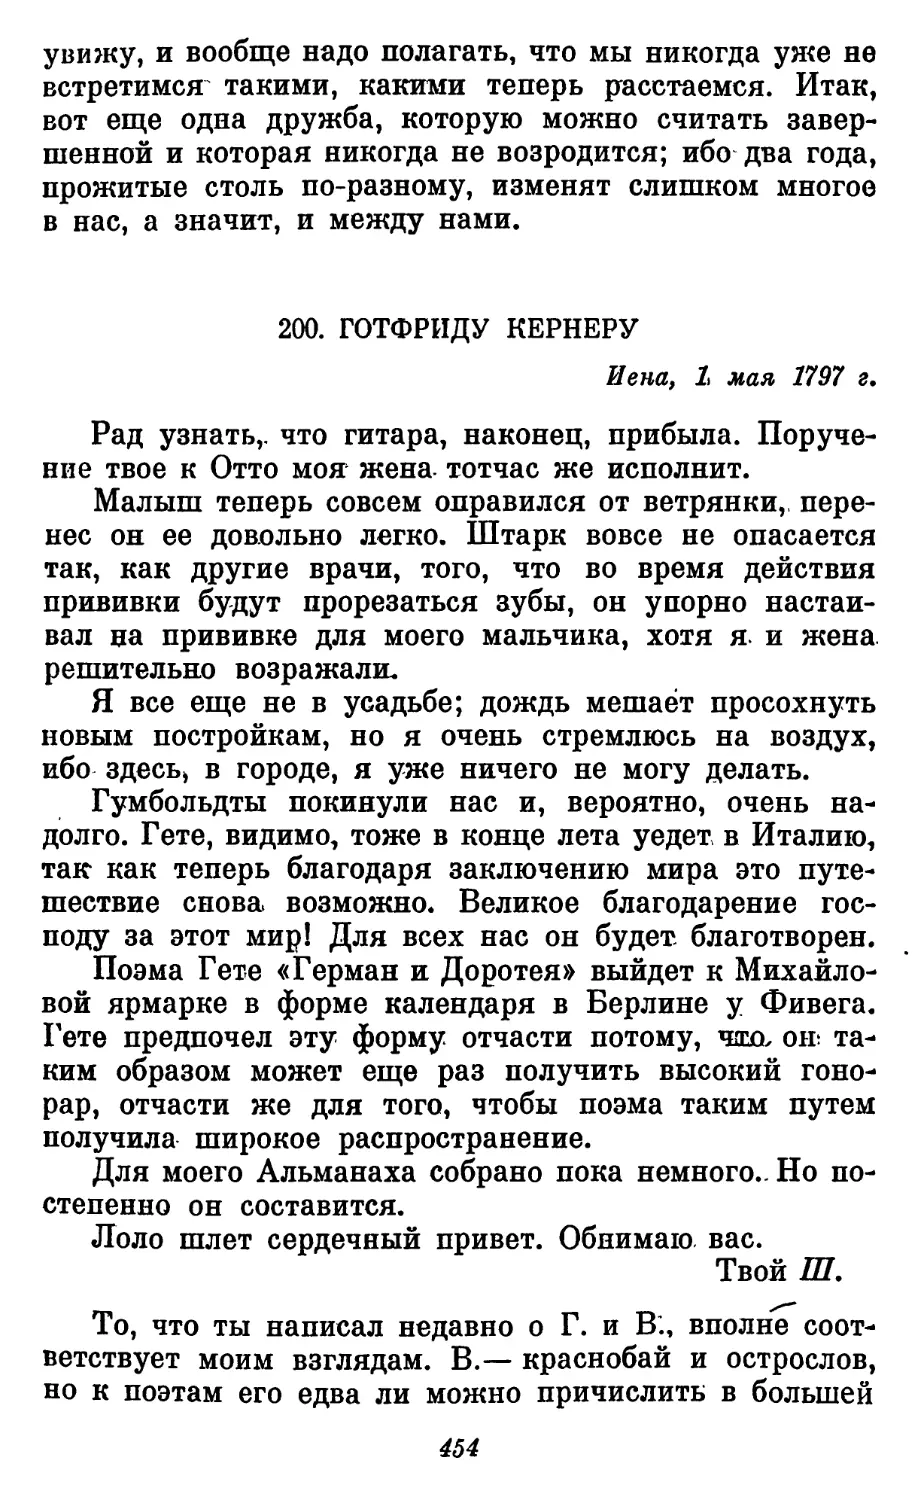 200. Готфриду Кернеру, 1 мая 1797 г